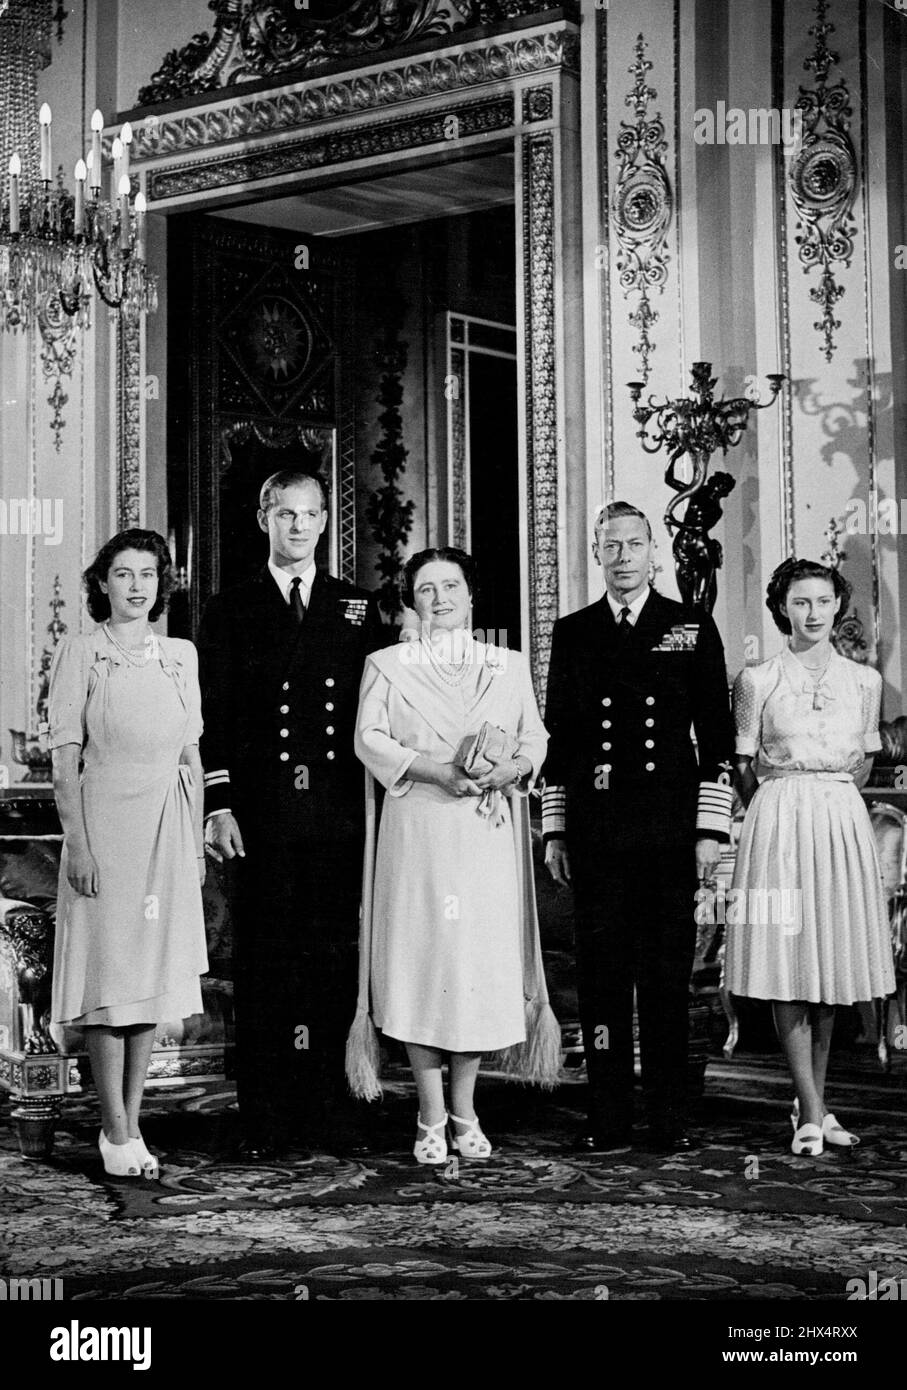 La famille royale photographiée au Palais de Buckingham -- Une nouvelle photographie du roi et de la reine, la princesse Elizabeth, la princesse Margaret et le lieutenant Philip Mount Batten, dont le mariage avec la princesse Elizabeth a lieu à l'abbaye du ministre de l'Ouest le 20th novembre 1947. 15 octobre 1947. Banque D'Images